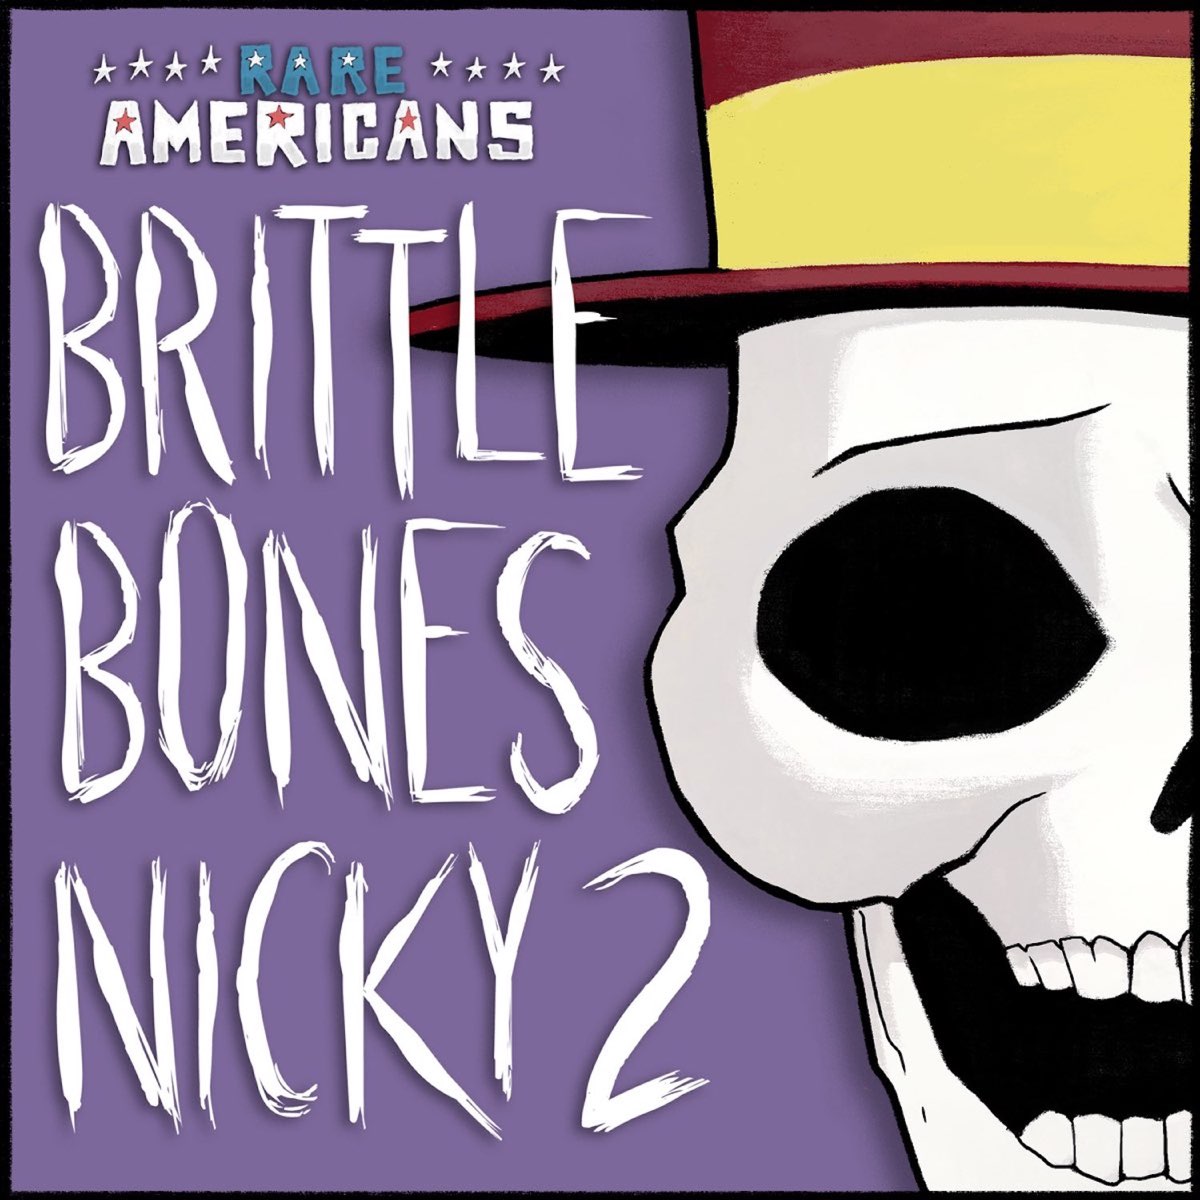 Brittle bones nicky